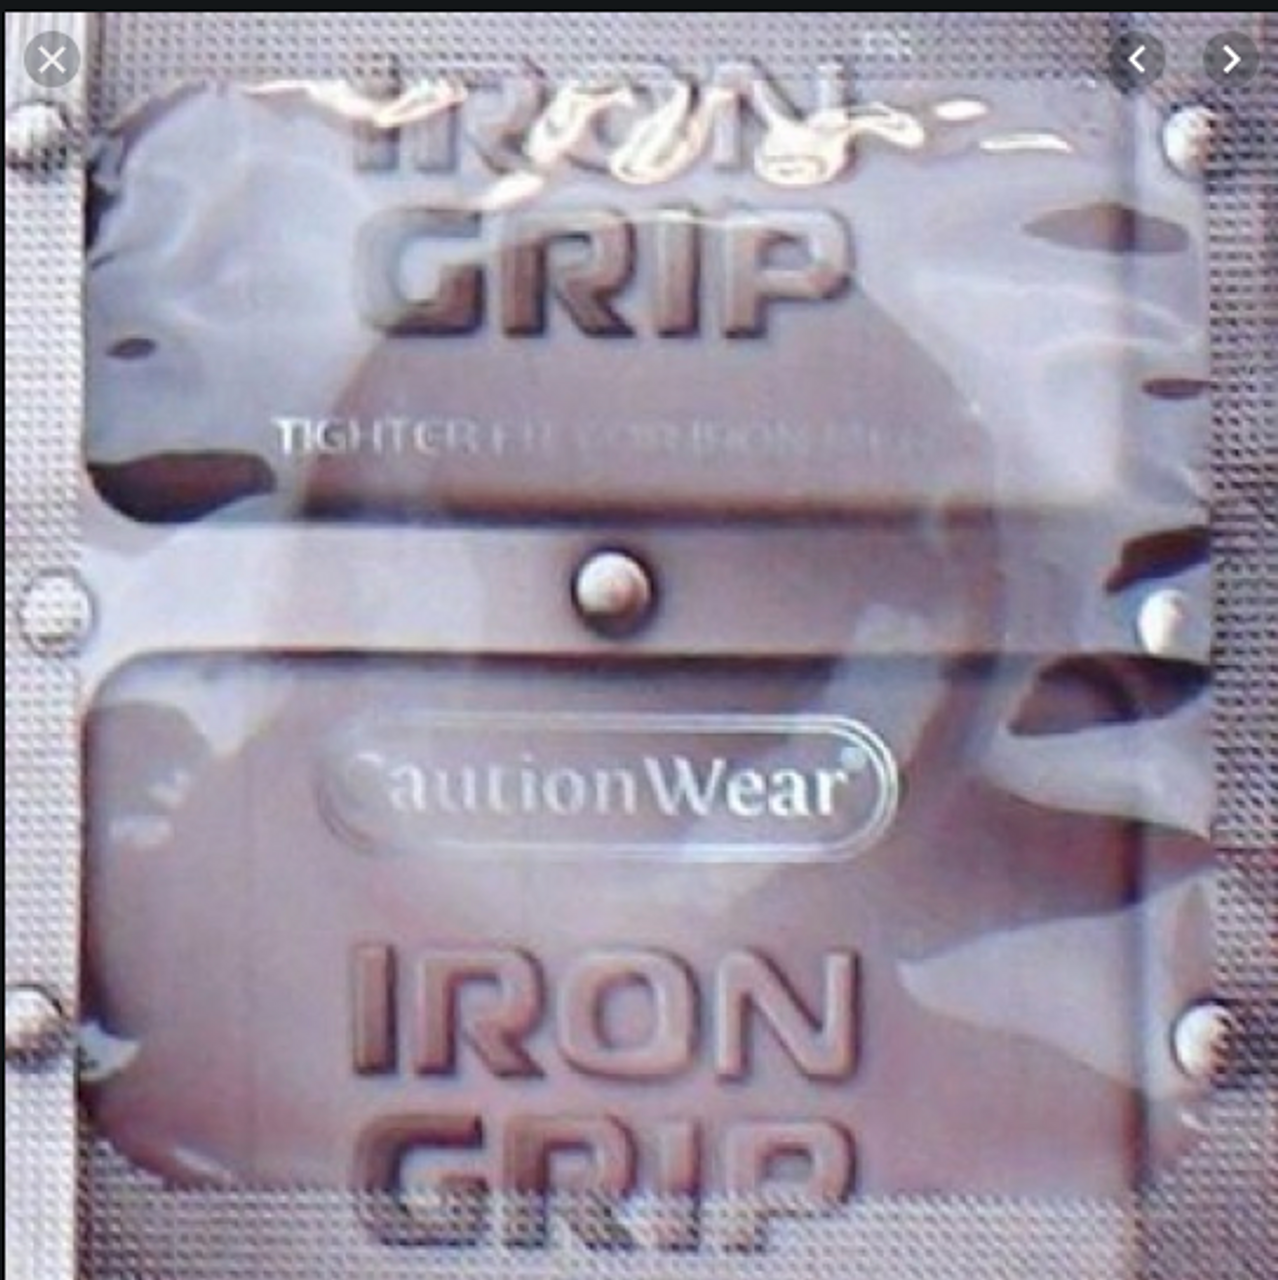 Caution Wear Iron Grip